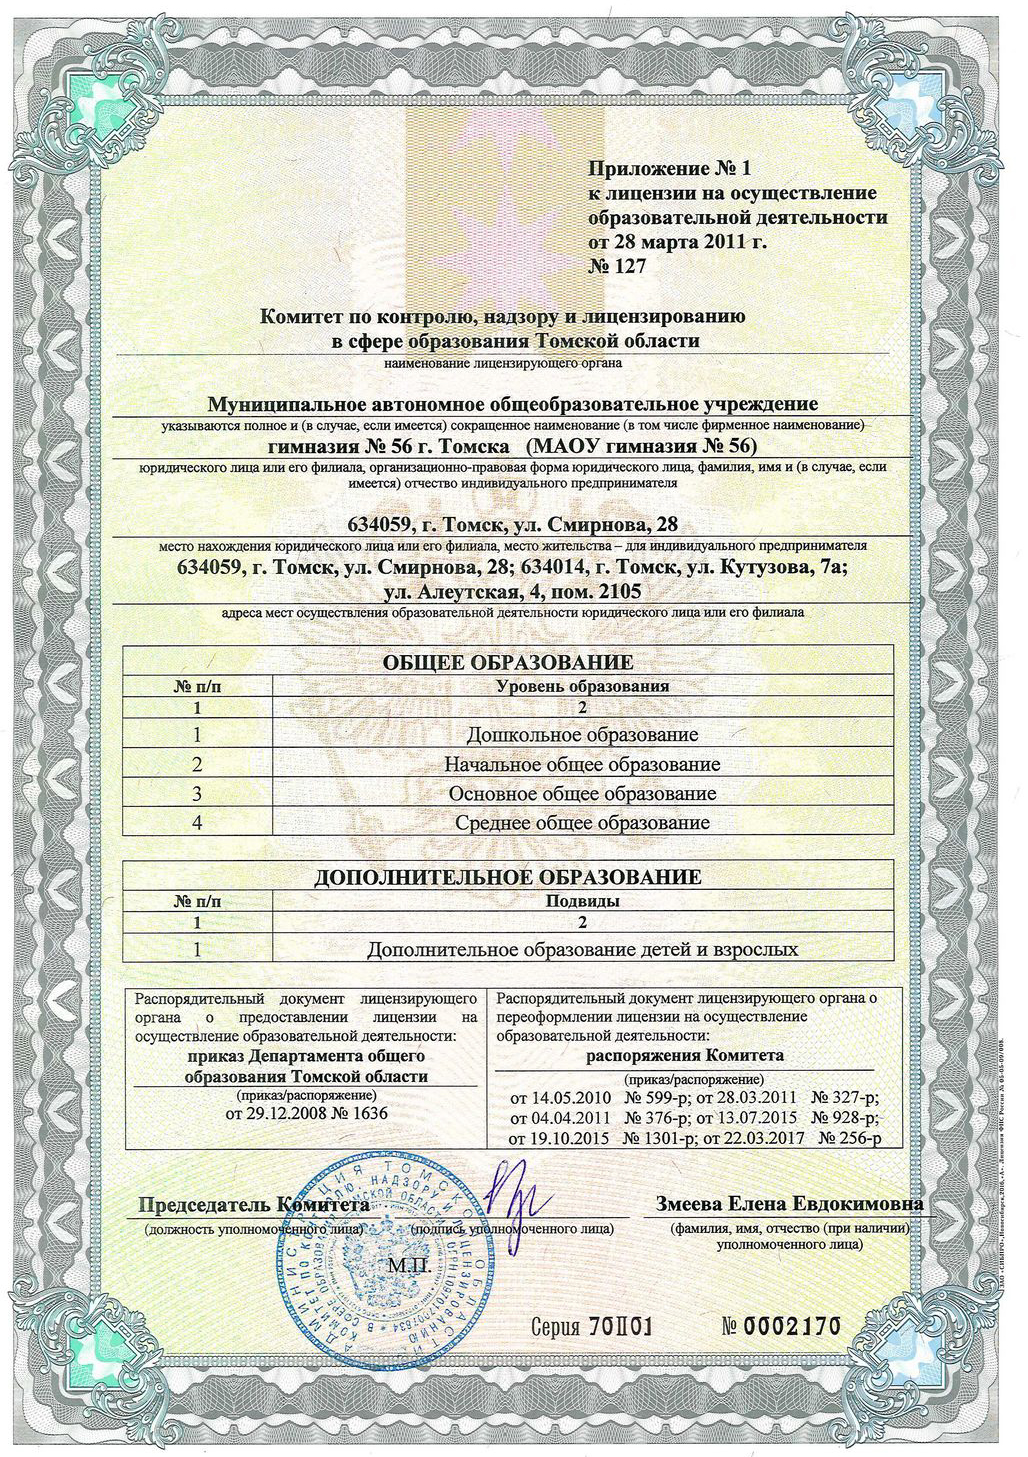 Приложение к лицензии на право ведения образовательной деятельности от 28.03.2011